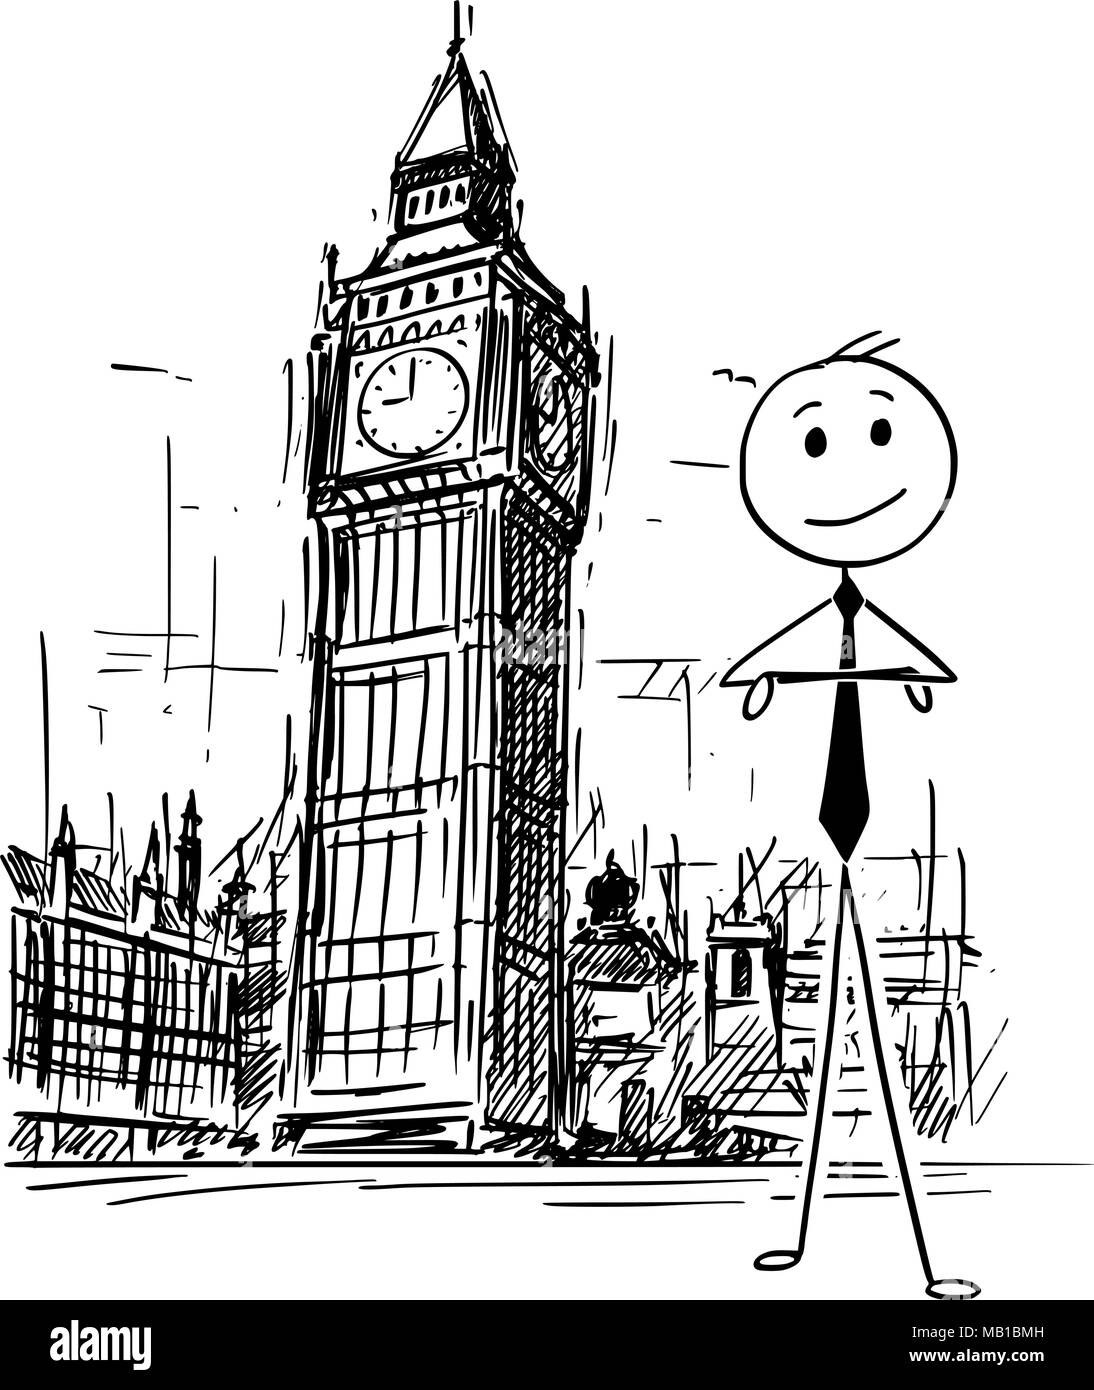 Cartoon of Businessman Standing in Front of Big Ben Clock Tower in London, England Stock Vector